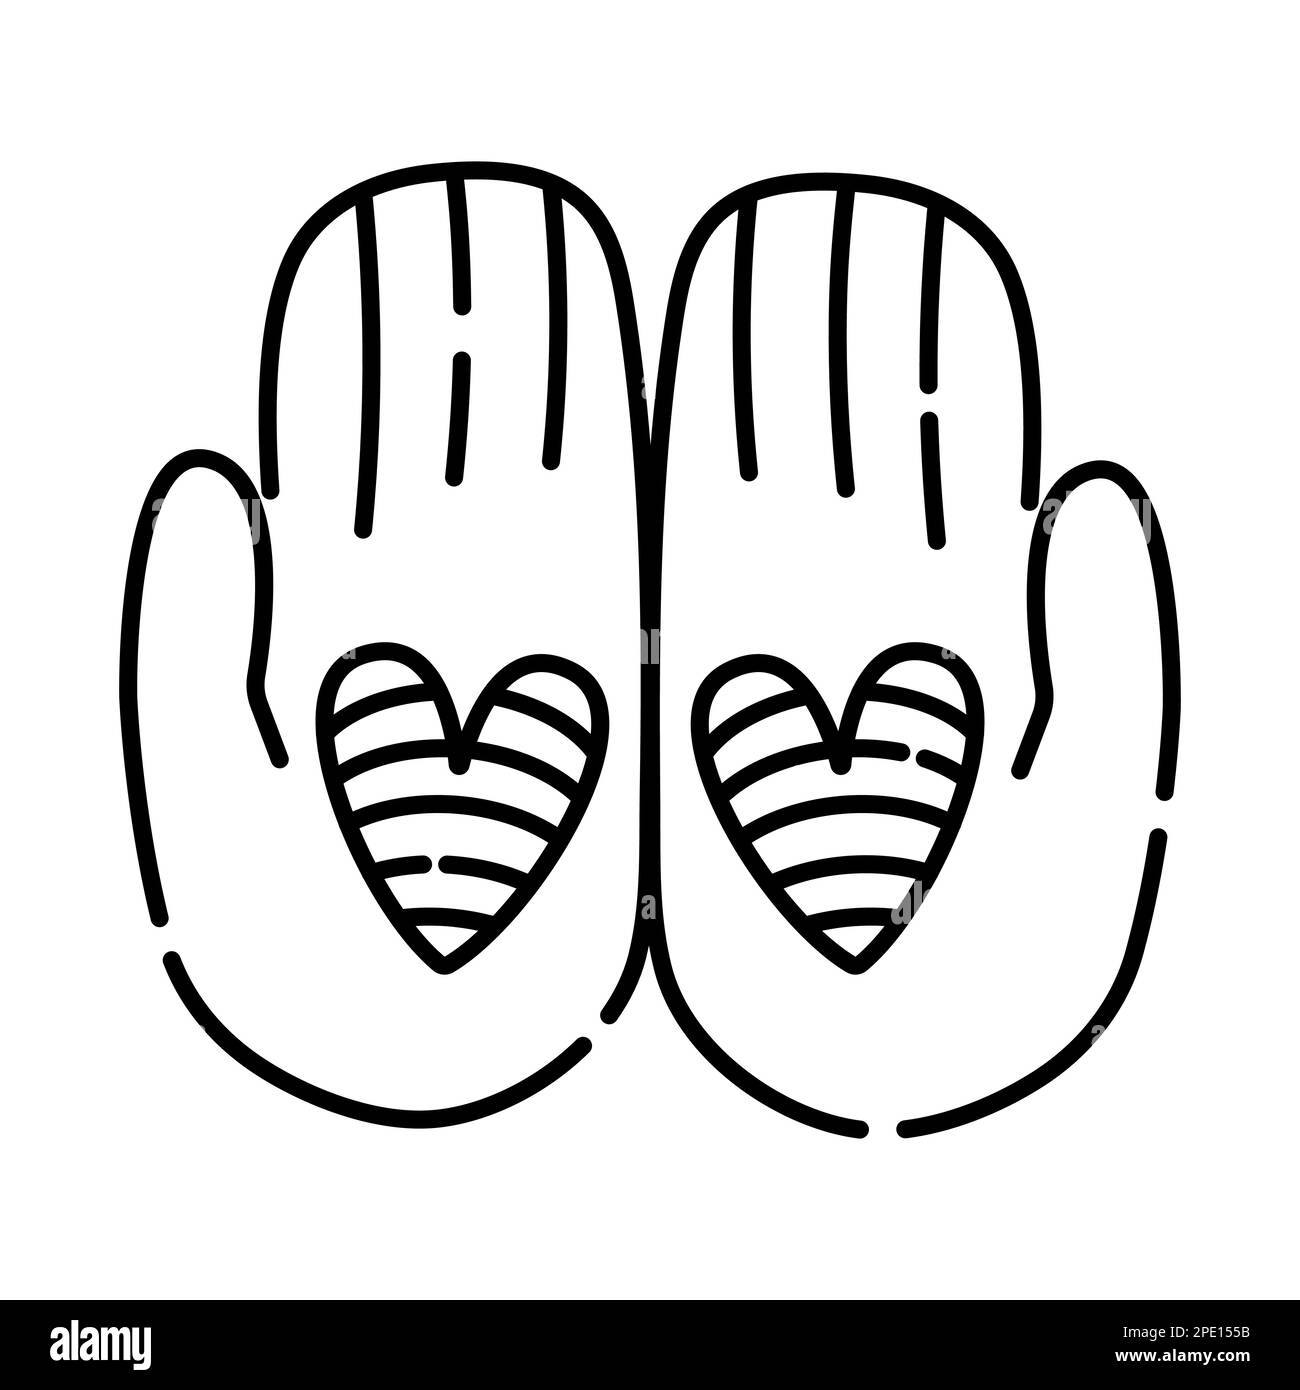 Zwei Hände mit Herzen, Symbol des Vertrauens, Vektorgrafik mit schwarzen Linien Stock Vektor